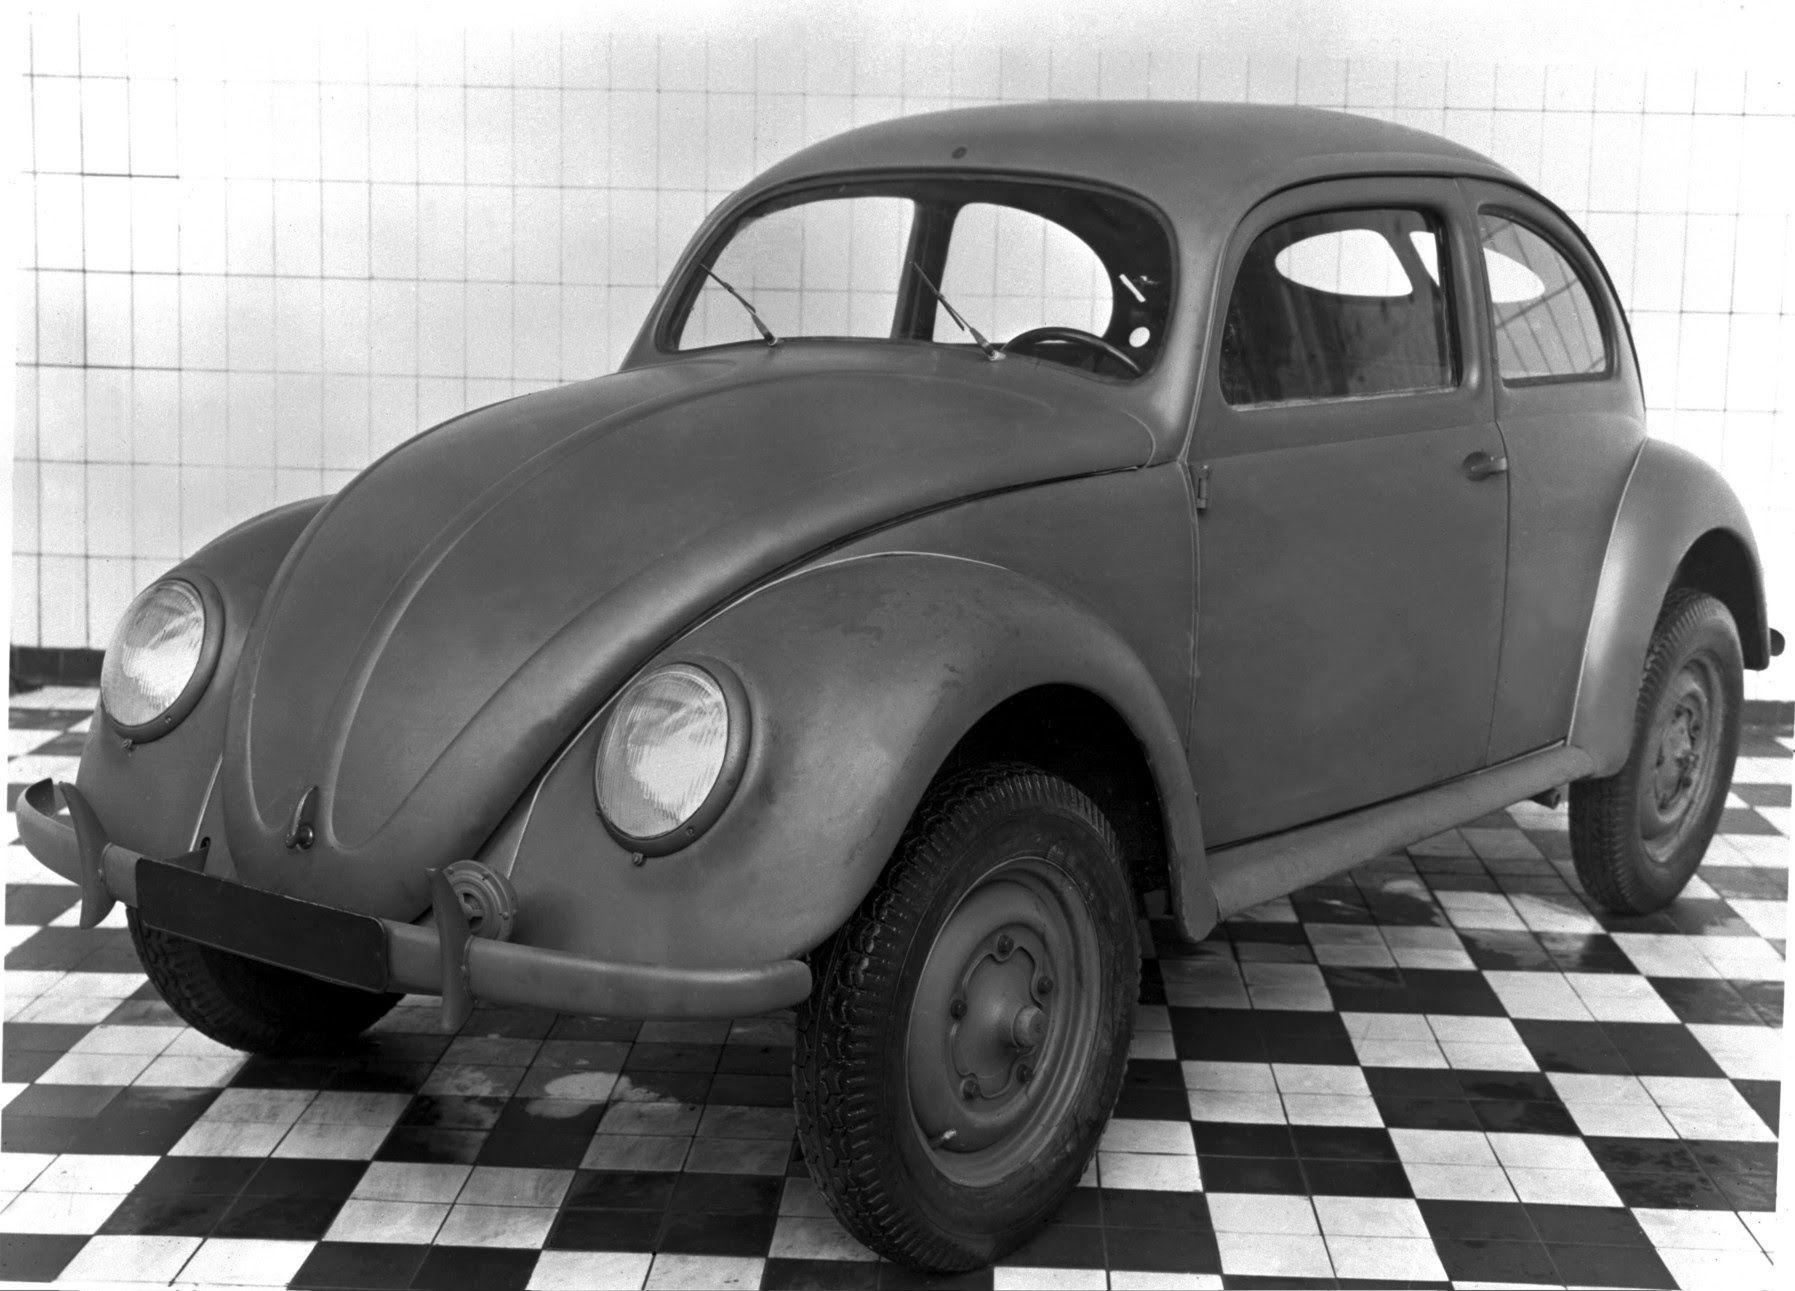 Výroba VW Brouk